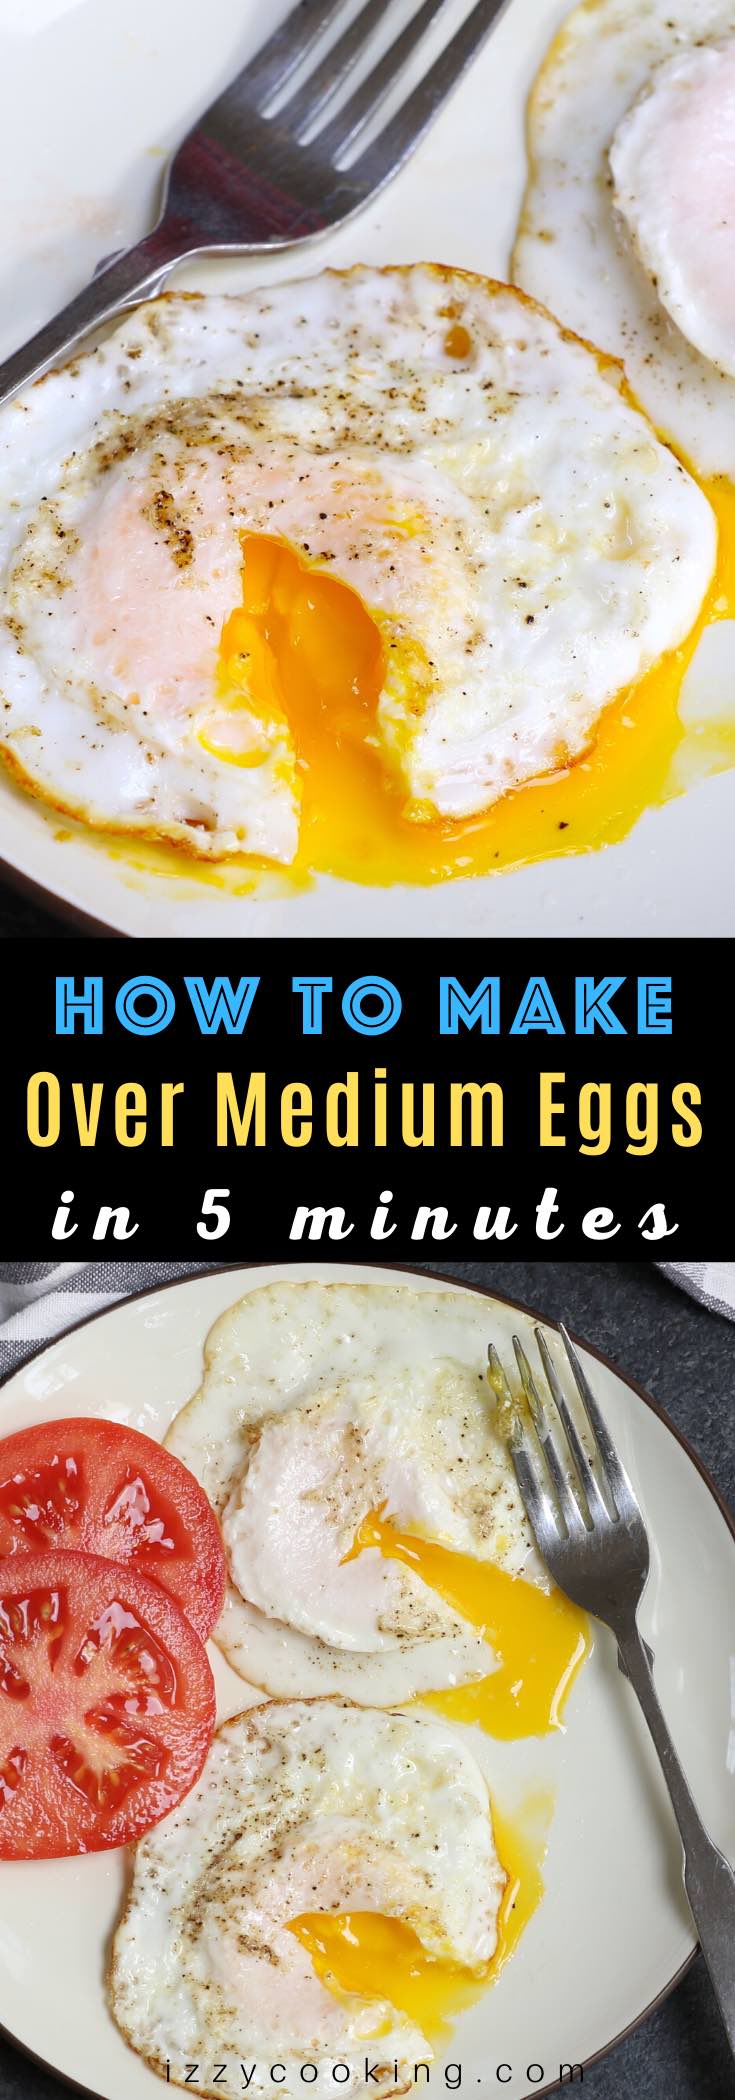 eggs over medium